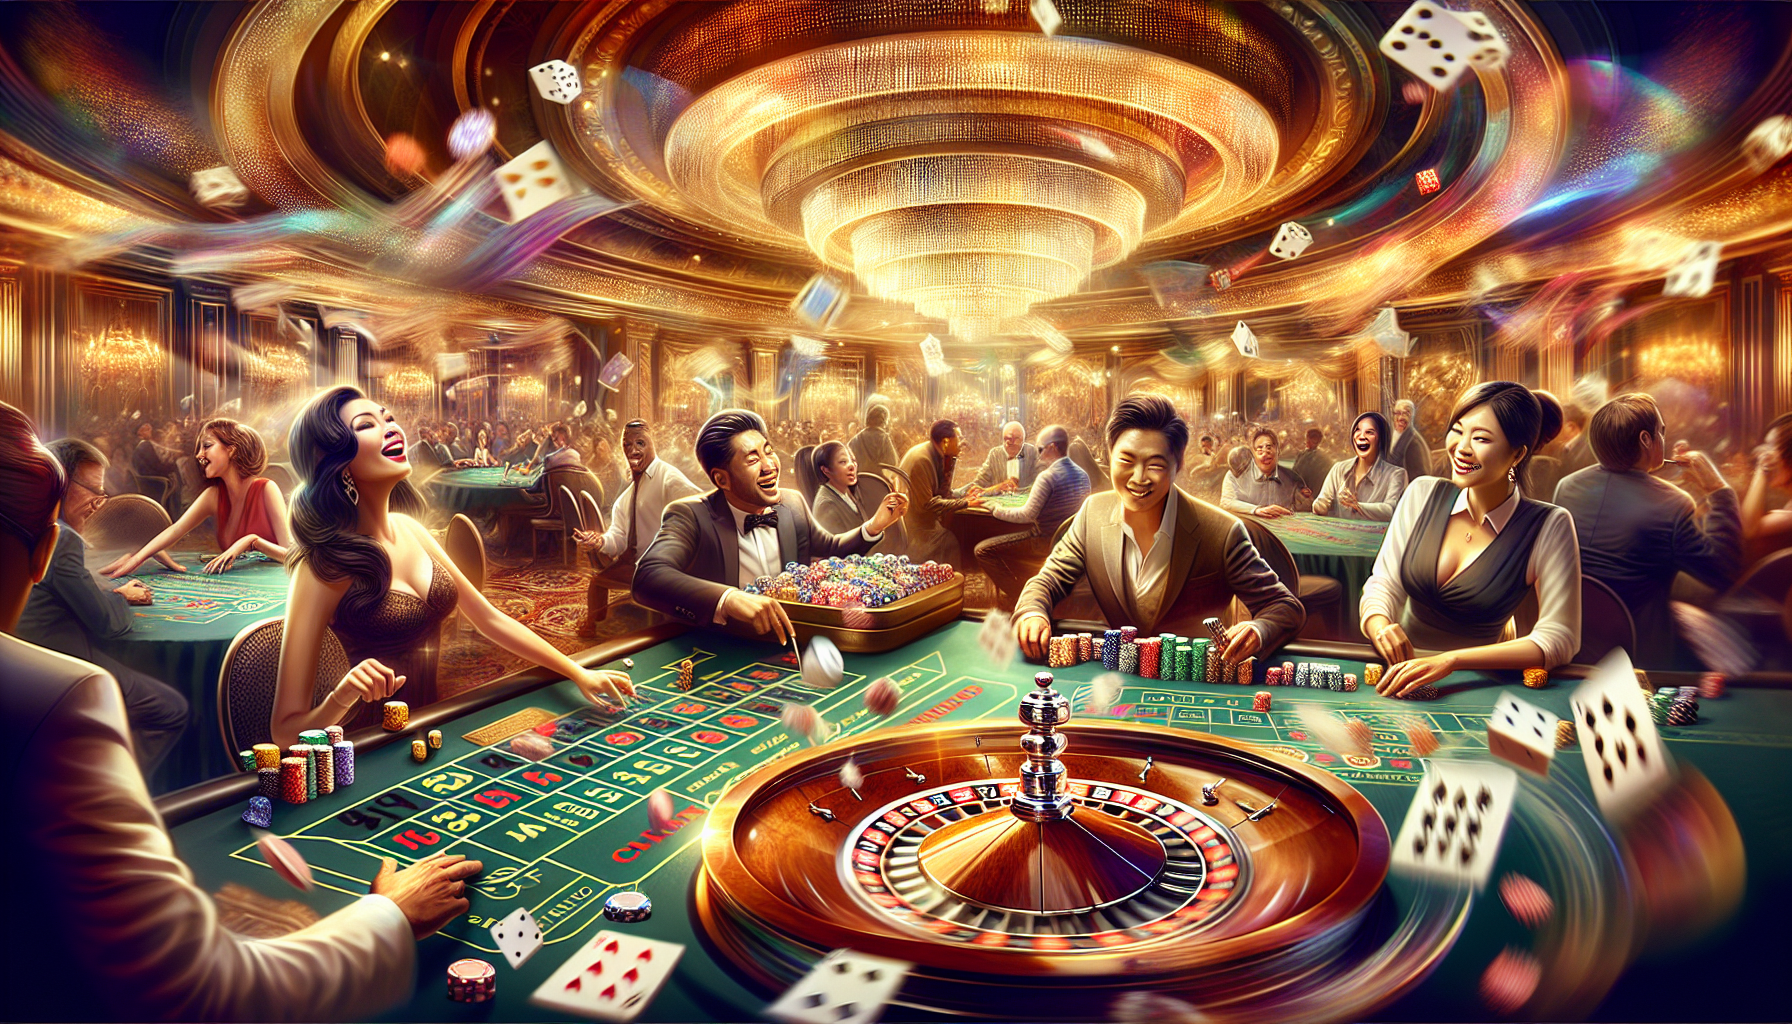 Le Frisson du Casino en Direct : illustration de joueurs excités dans un casino